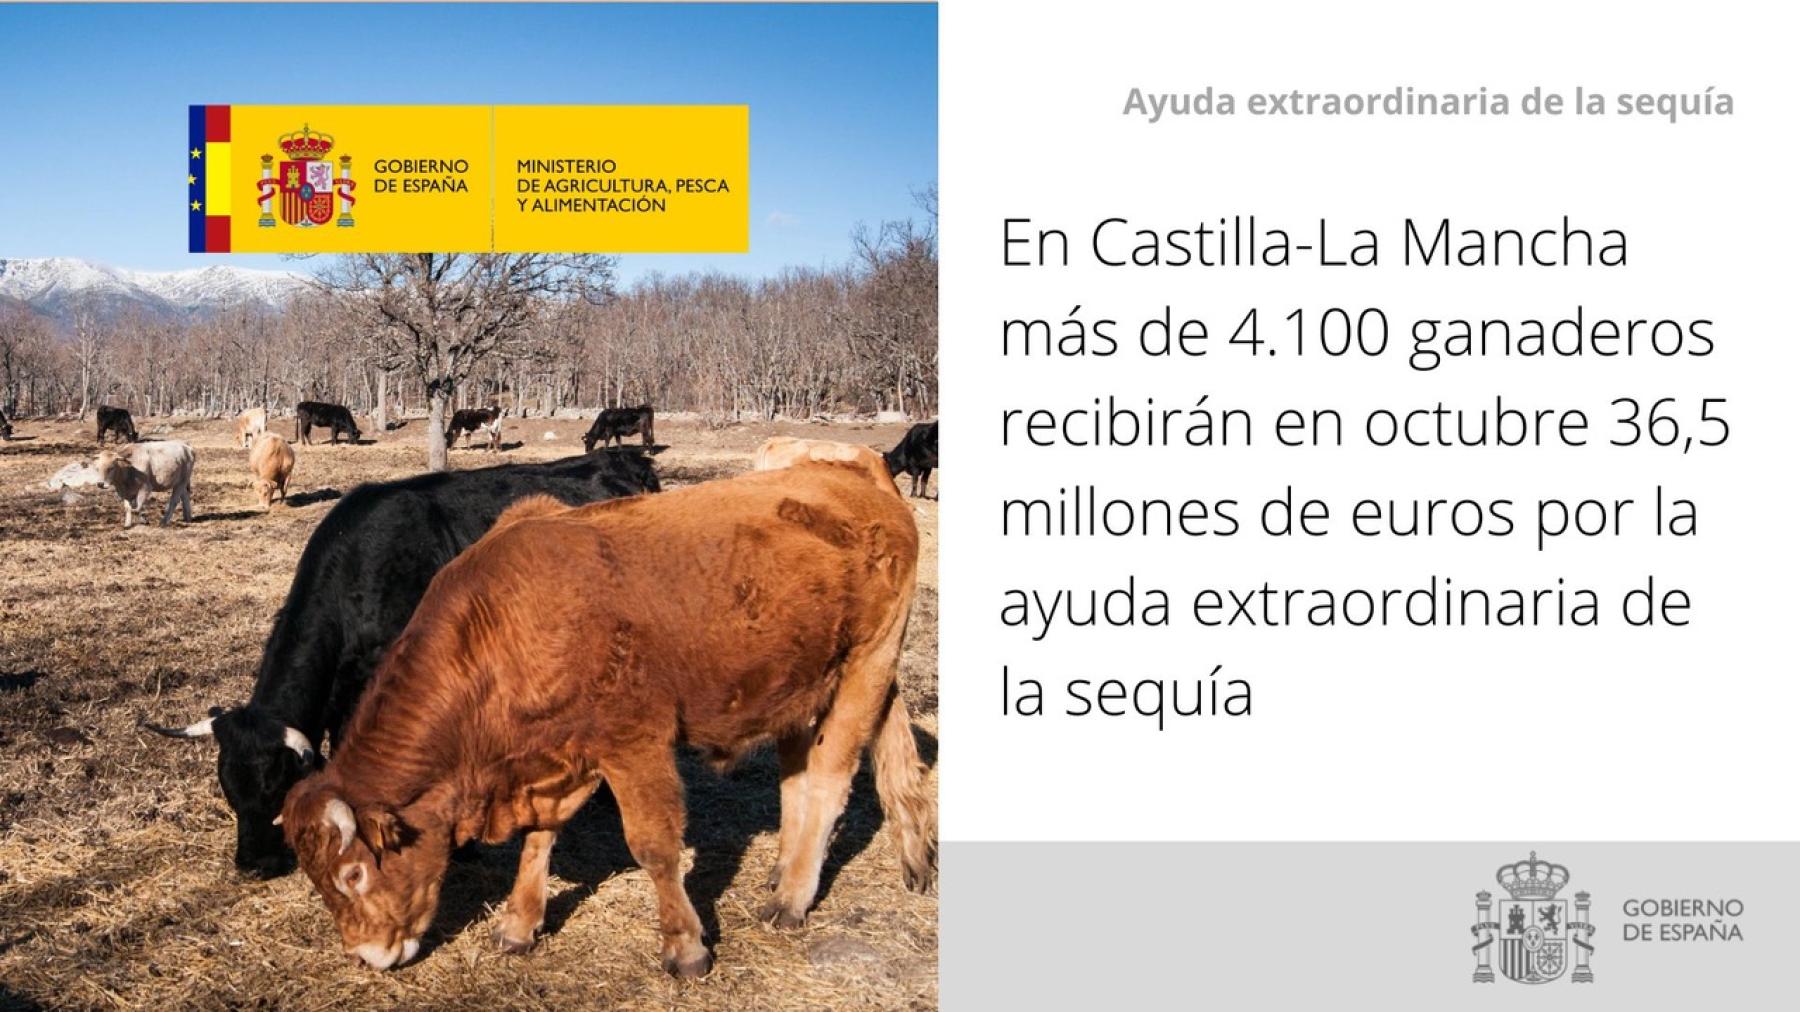 En Castilla-La Mancha más de 4.100 ganaderos recibirán en octubre 36,5 millones de euros por la ayuda extraordinaria de la sequía